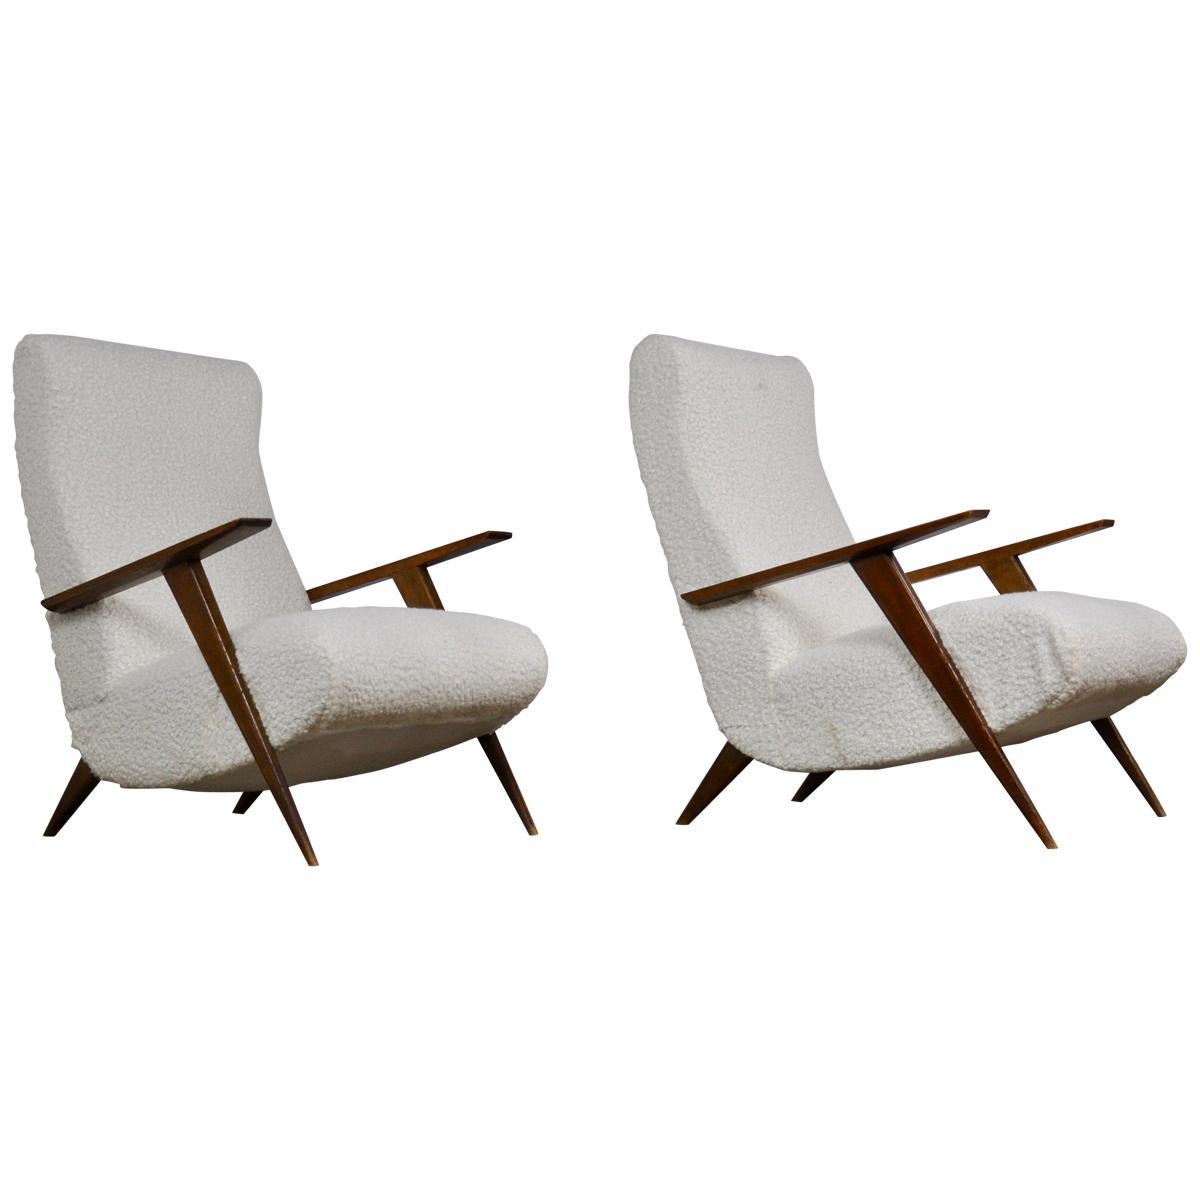 2 Italian Lounge Chairs, 1950s